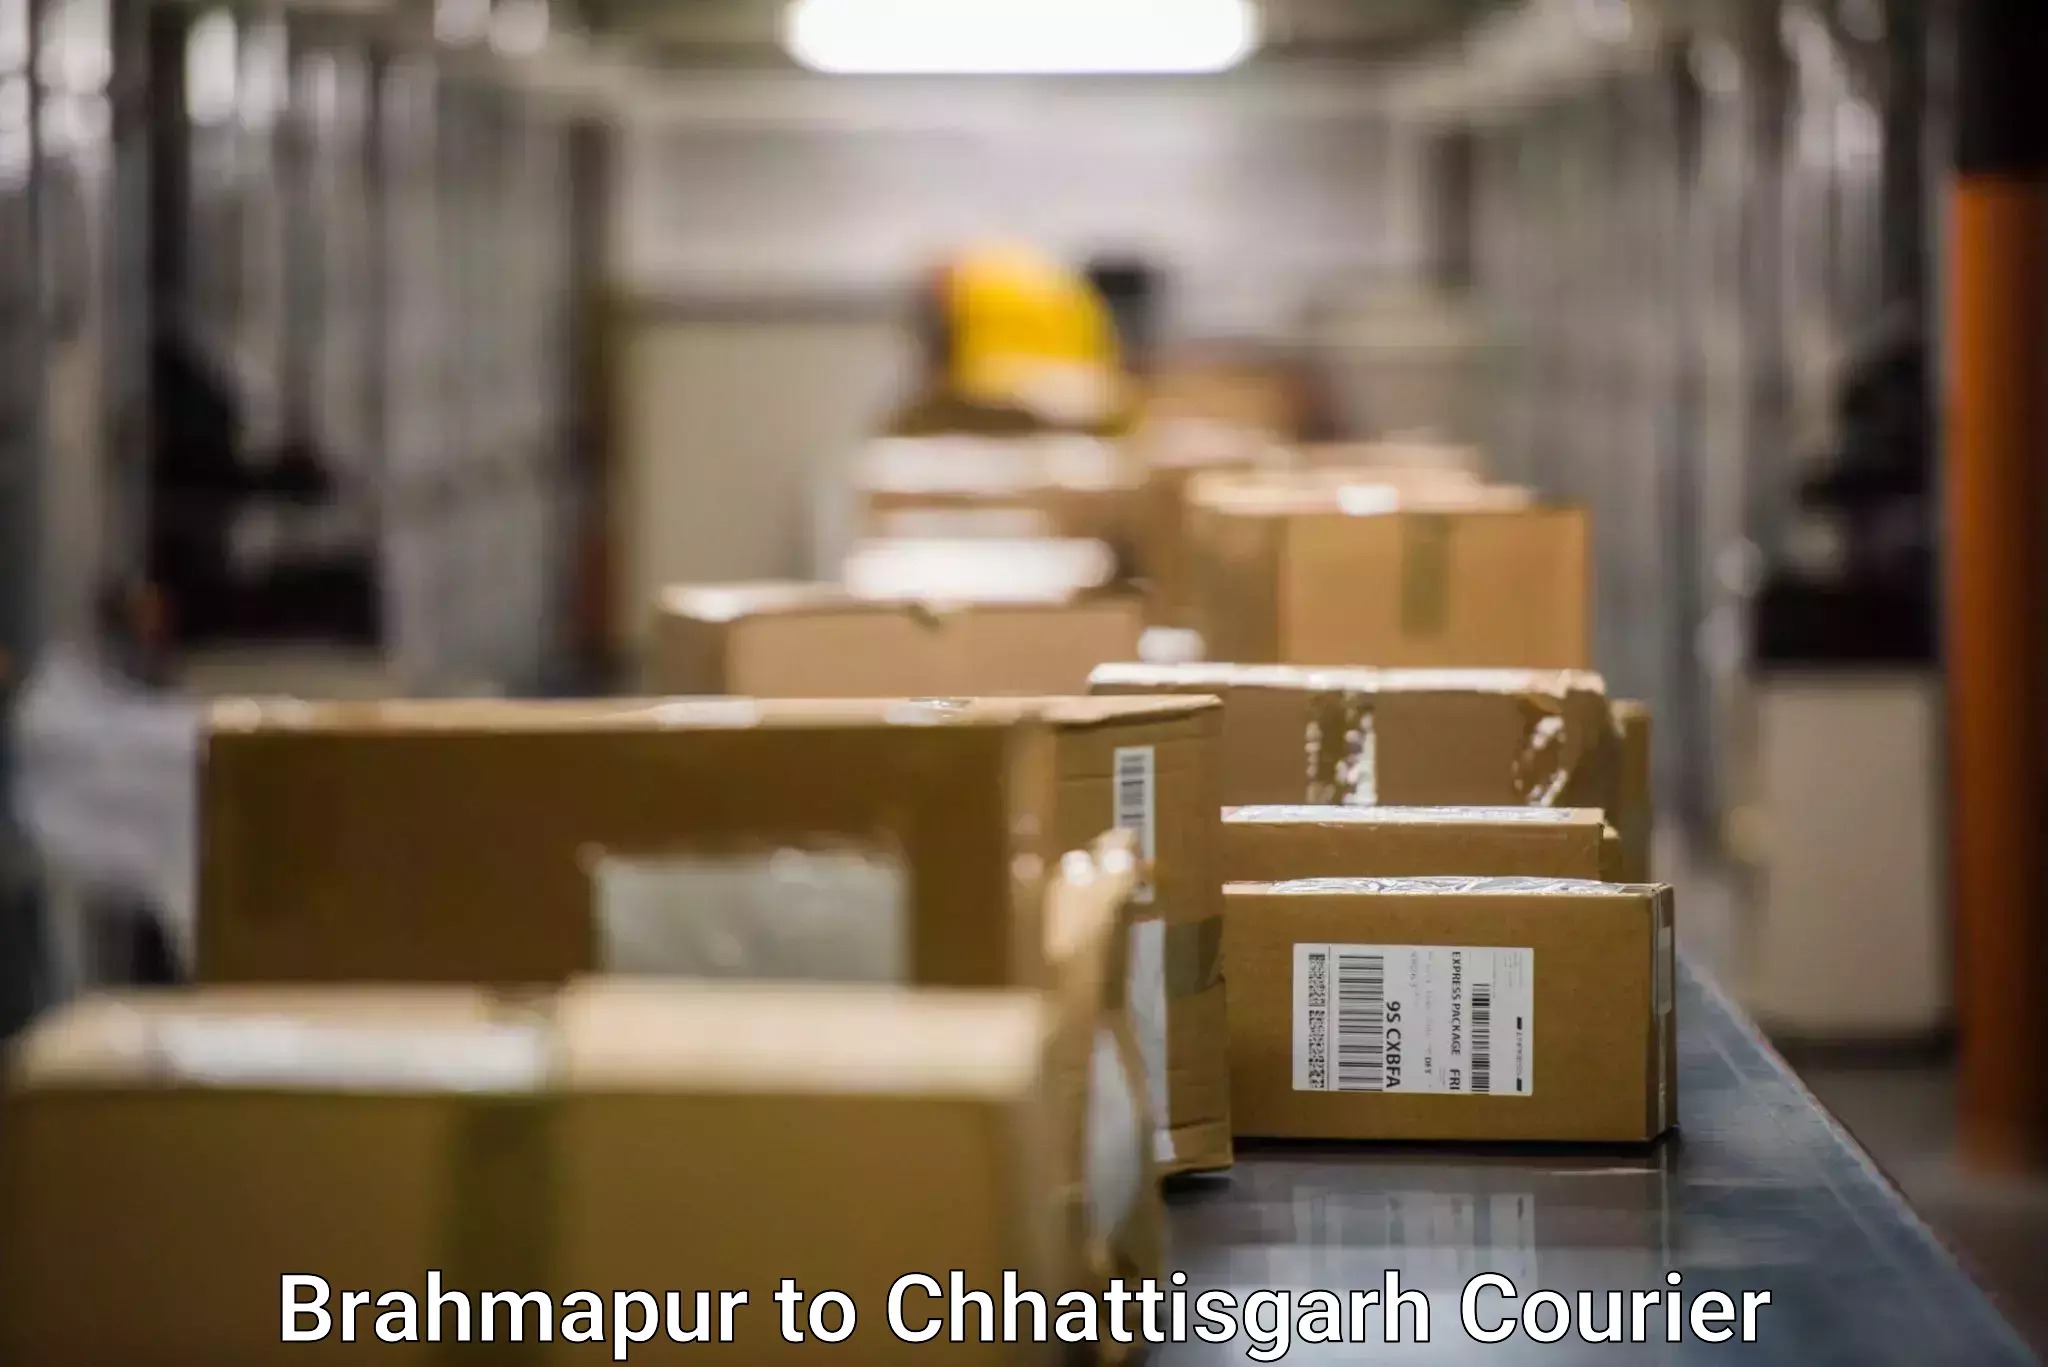 Rural area delivery in Brahmapur to Chhattisgarh